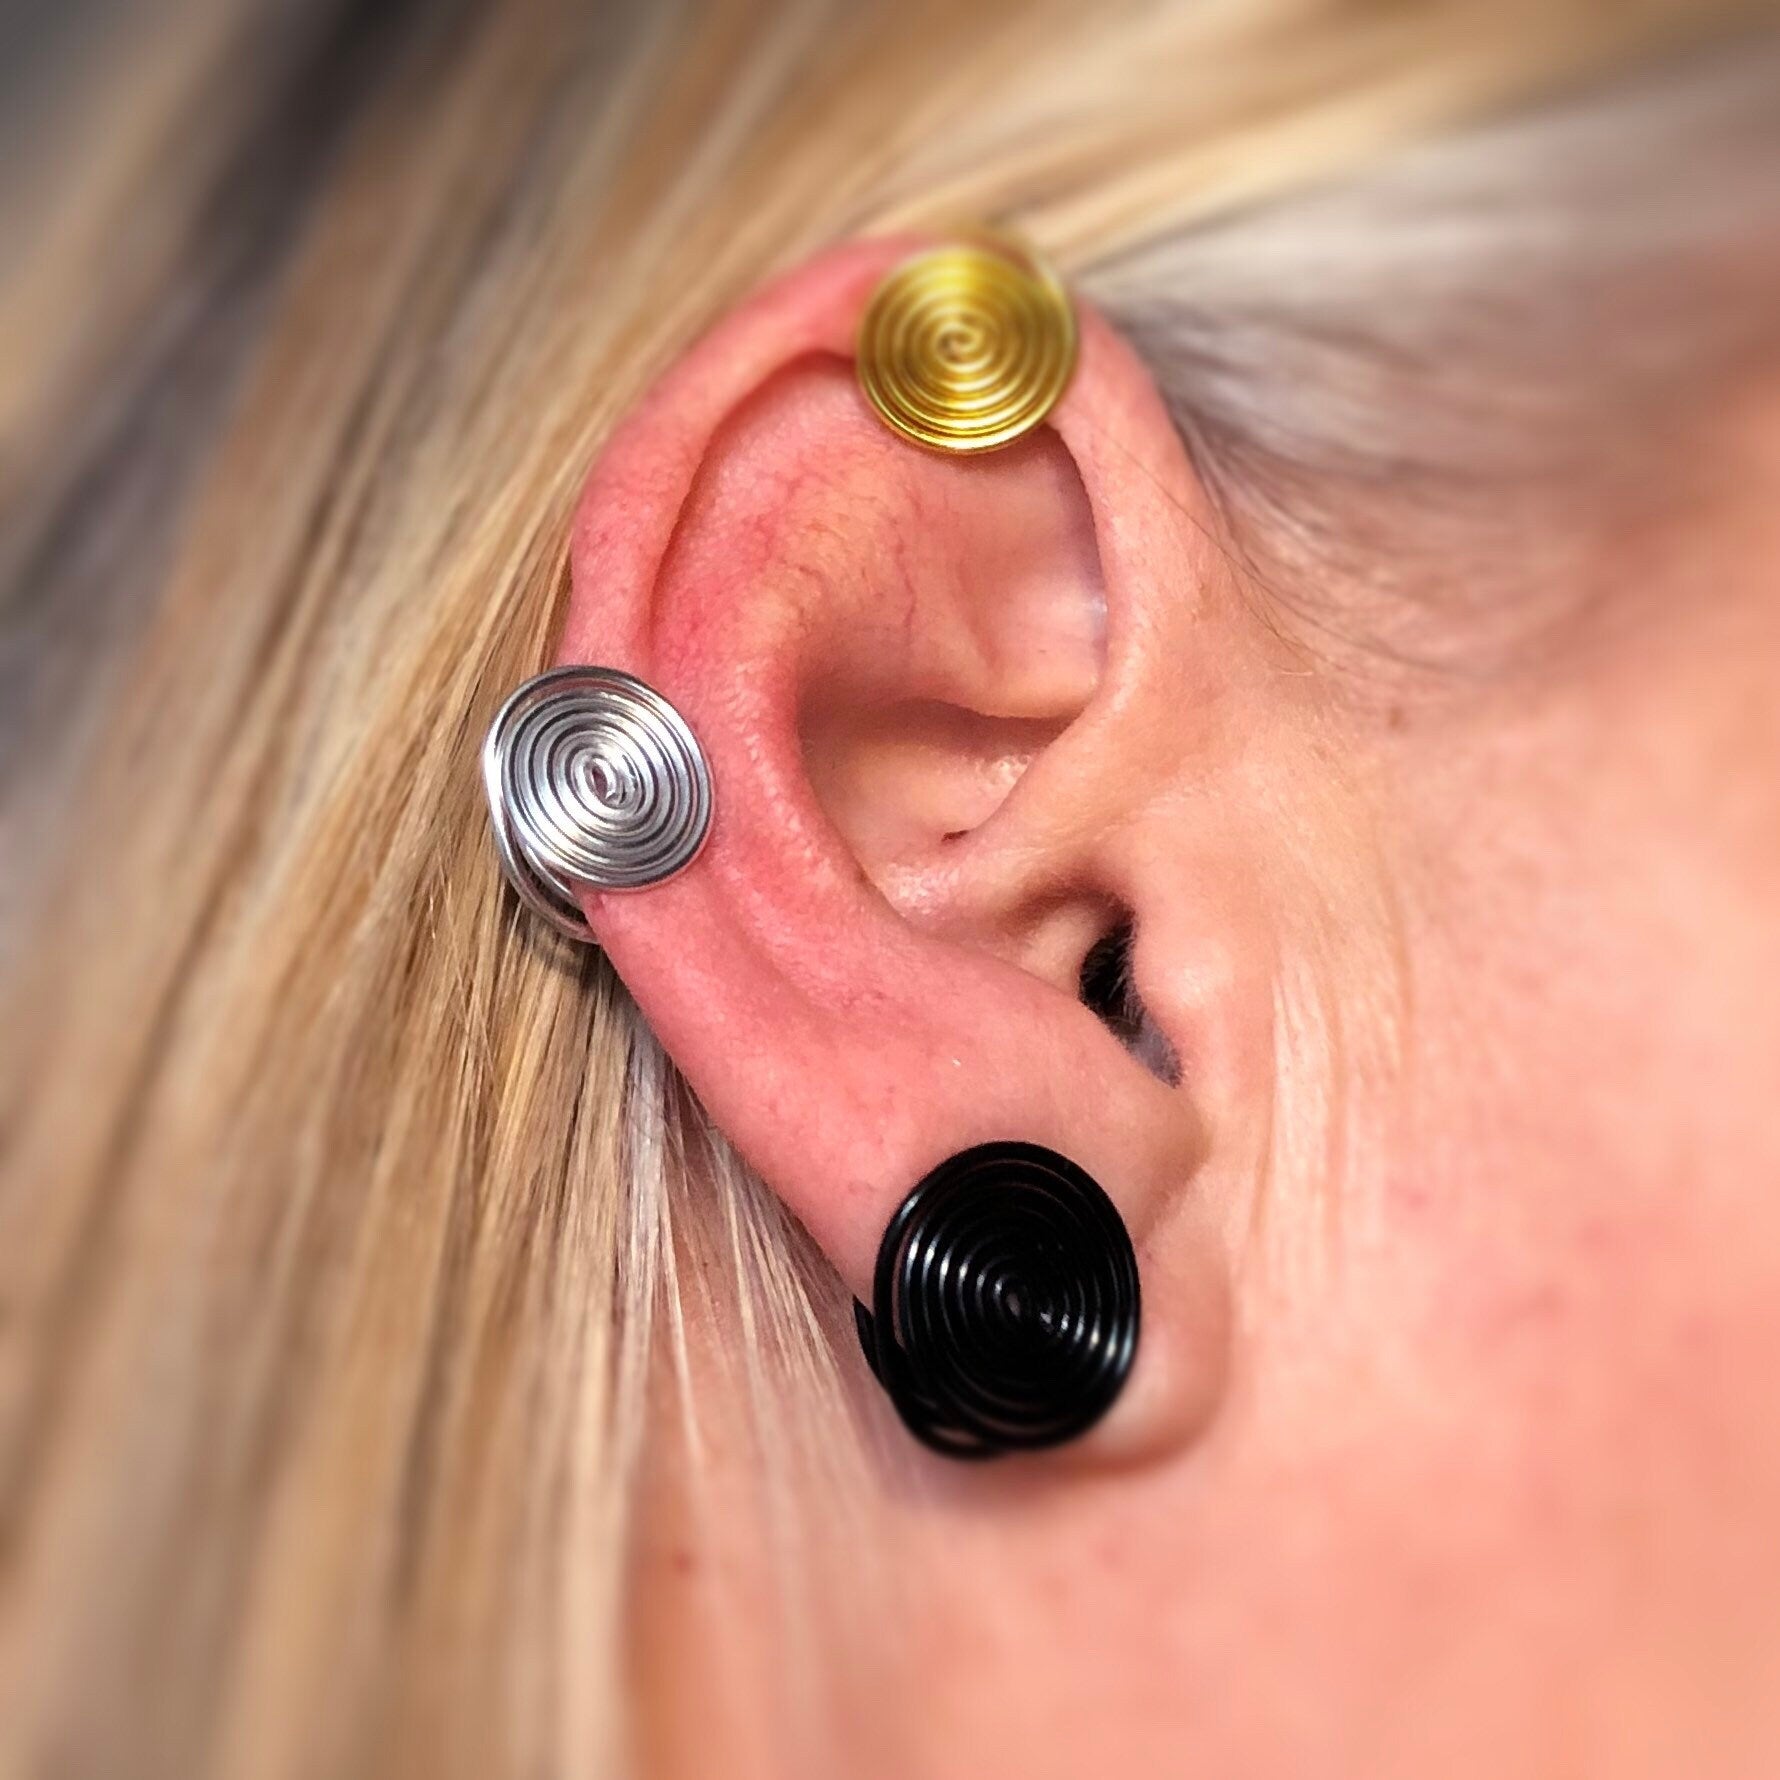 Pair keloid pressure earring fake piercing, Keloid earring keloid, Pressure earring for keloid, single earring or earring set 8mm-15mm